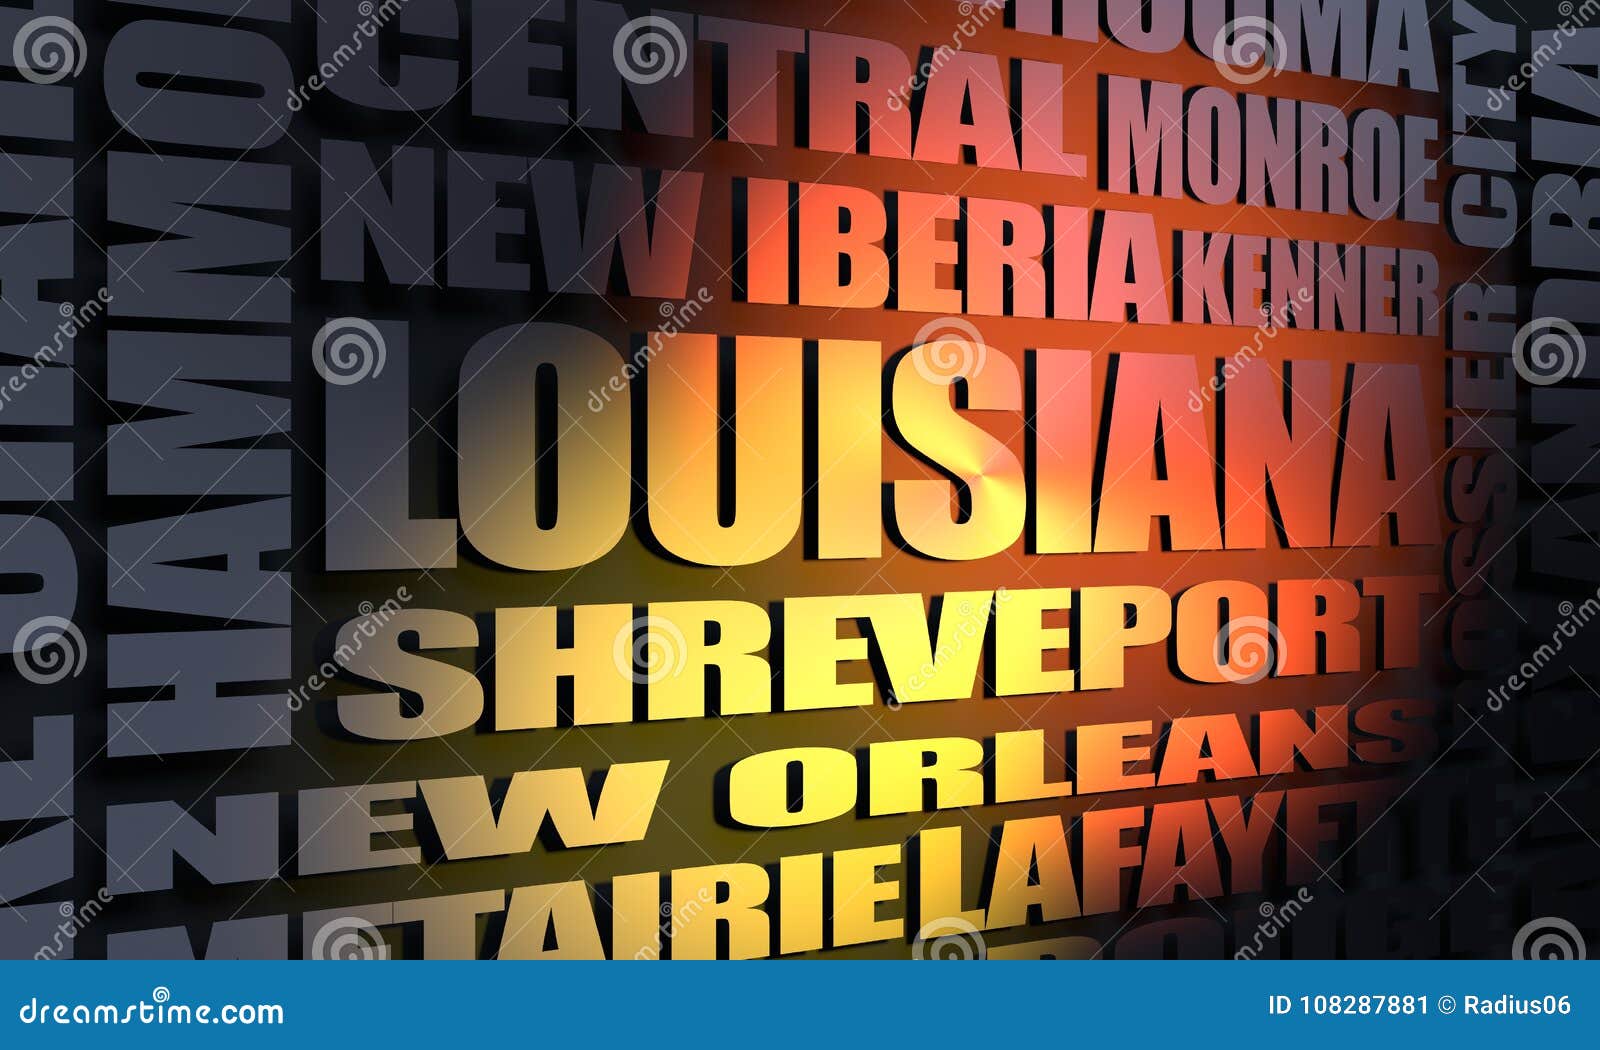 Louisiana cities list stock illustration. Illustration of cartography - 108287881